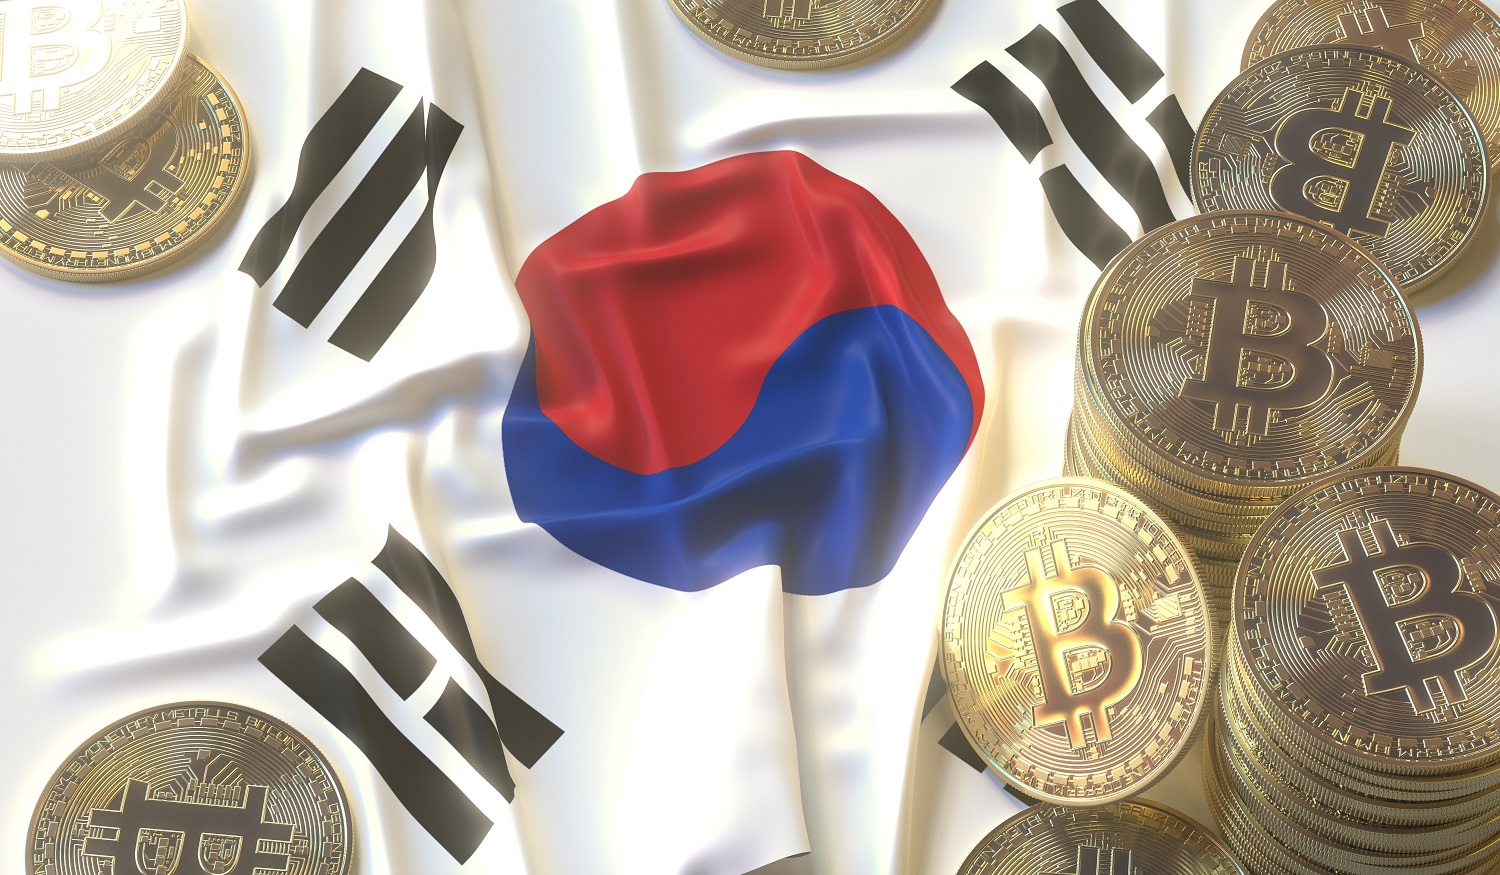 Güney Koreli savcı, skandal tırmanırken kripto endüstrisini ‘yeniden inceleme’ sözü verdi